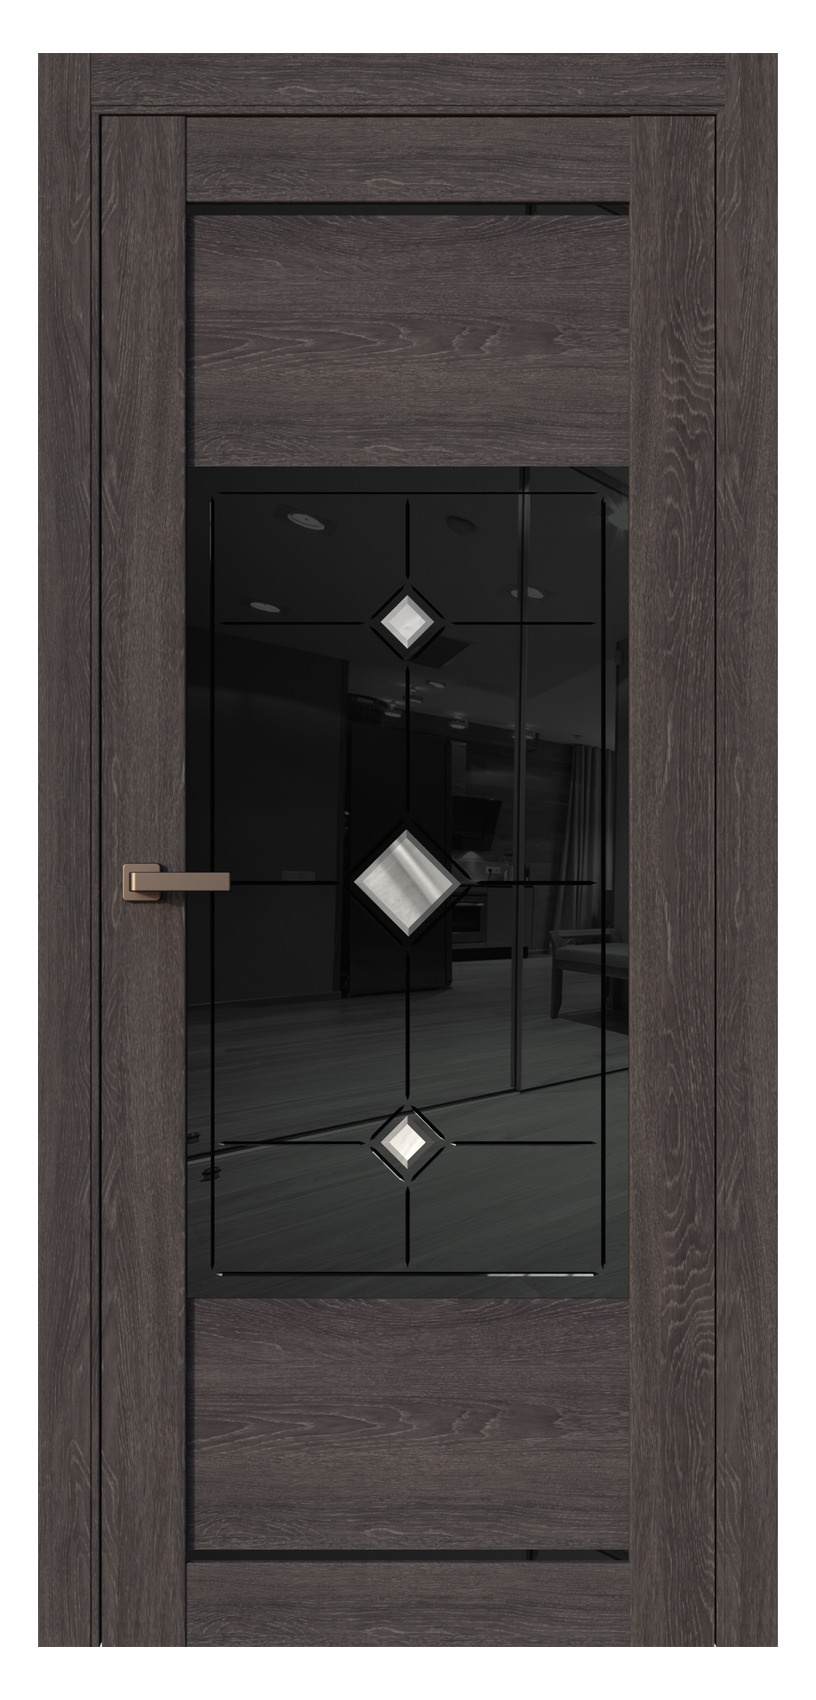 Questdoors Межкомнатная дверь QF3, арт. 17526 - фото №1